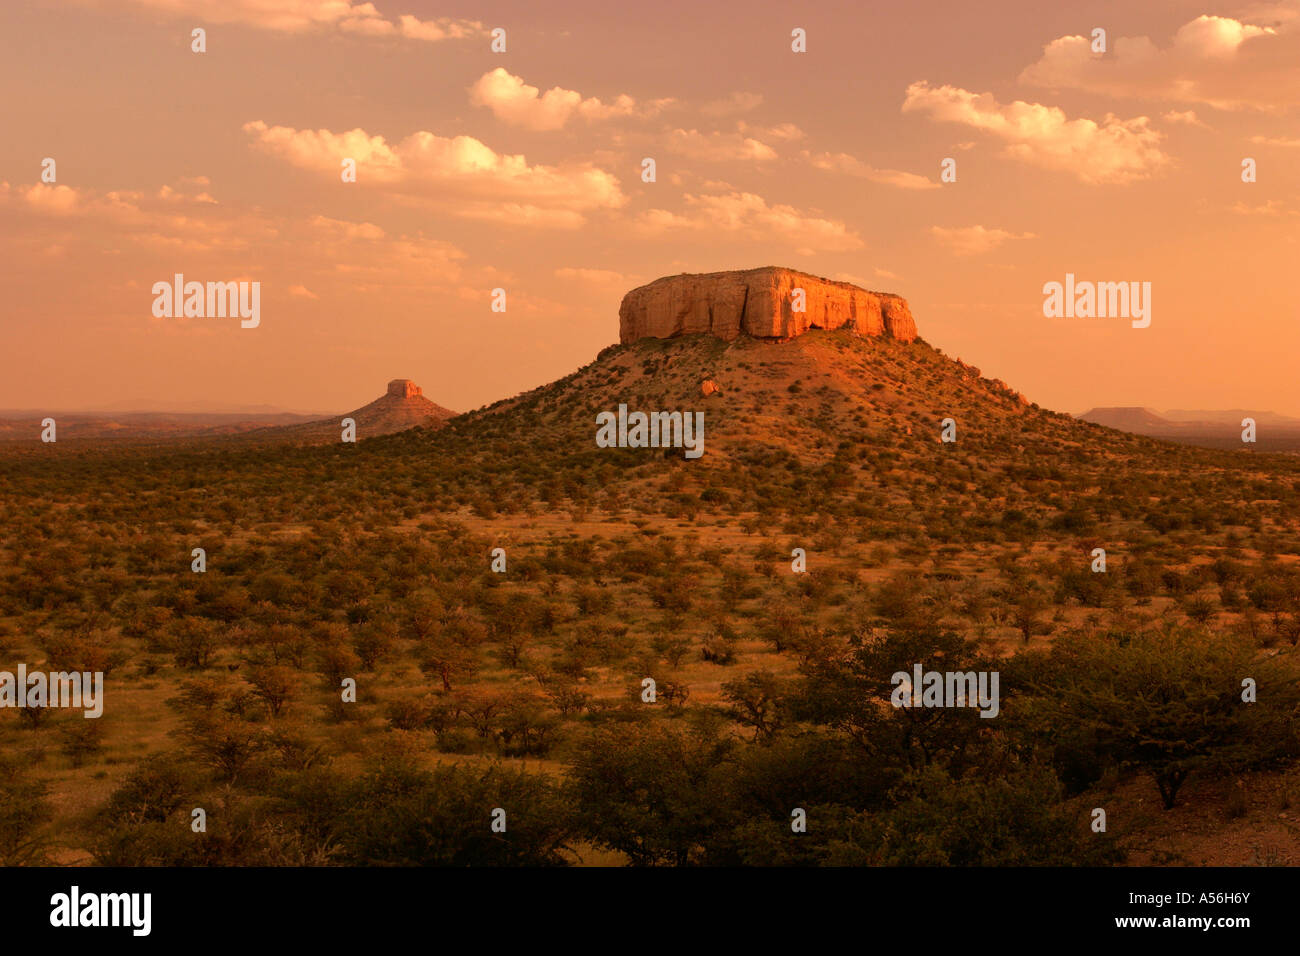 Ugab Terassen Im Abendlicht Ugab Tal Namibia Afrika Ugab Terrassen im Abend leichte Ugab-Tal Namibia Afrika Stockfoto